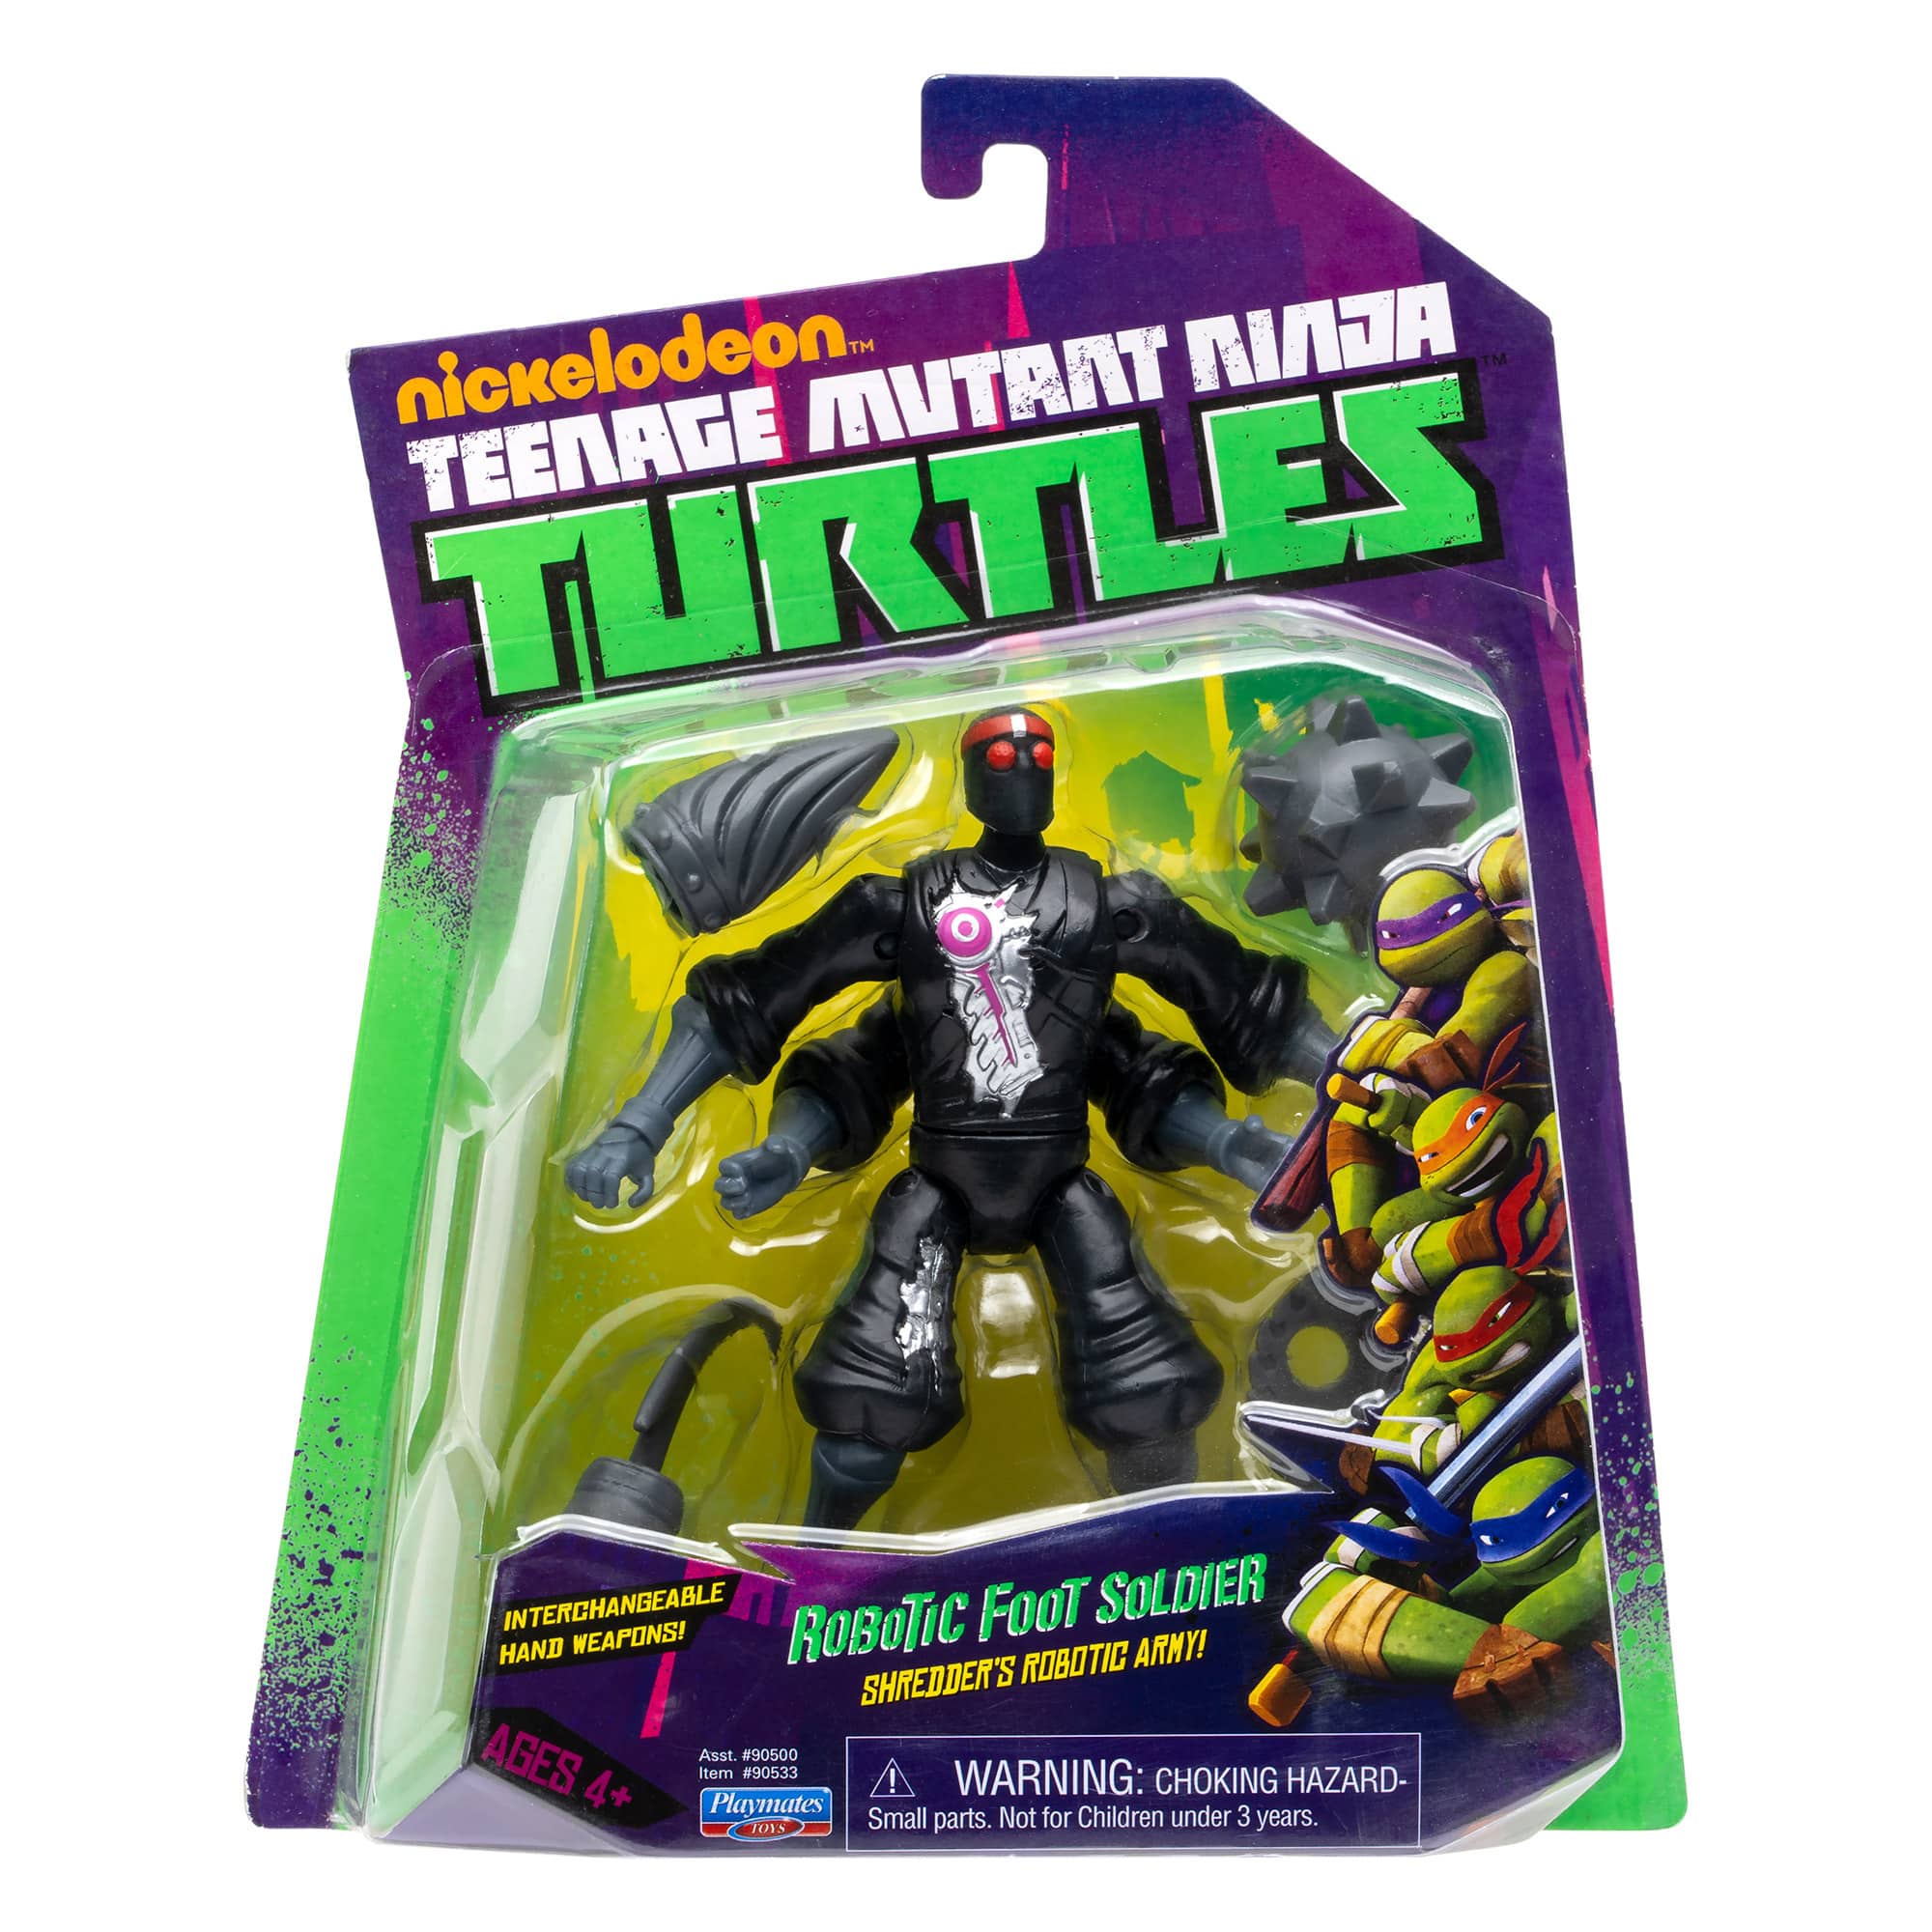 Teenage Mutant Ninja Turtles - Robotic Foot Soldier Figure